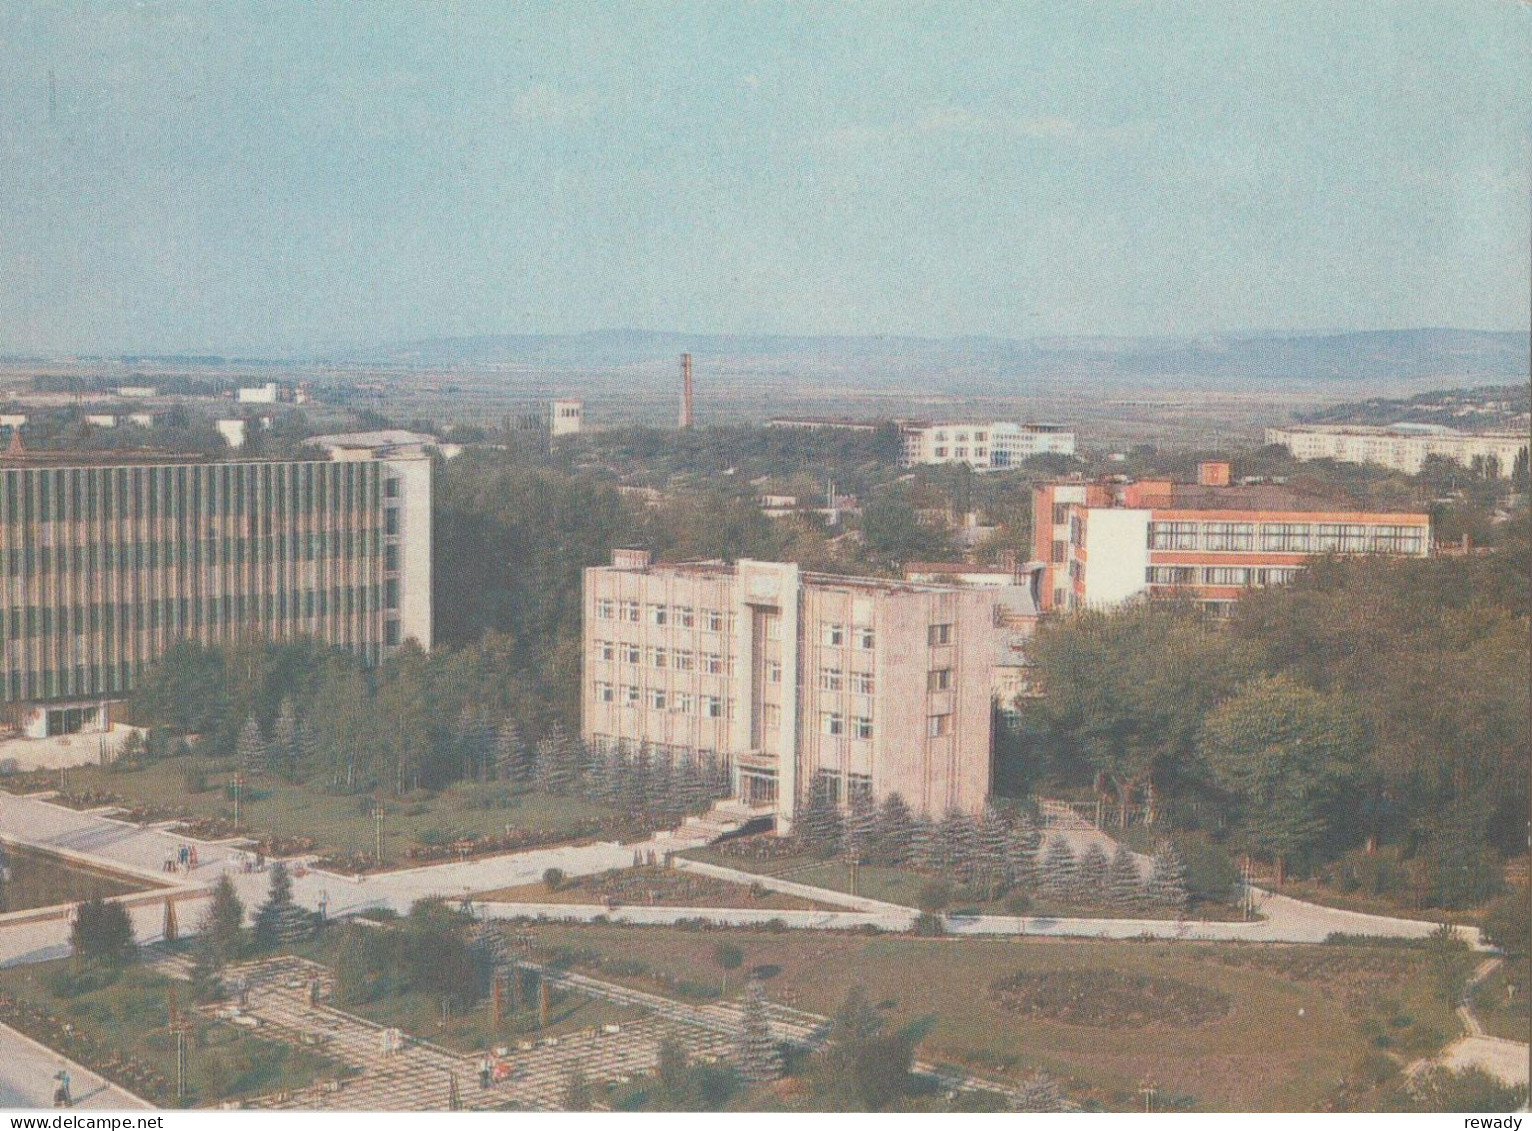 R. Moldova - Balti - Centrul Orasului - The Centre Of The Town - Moldova